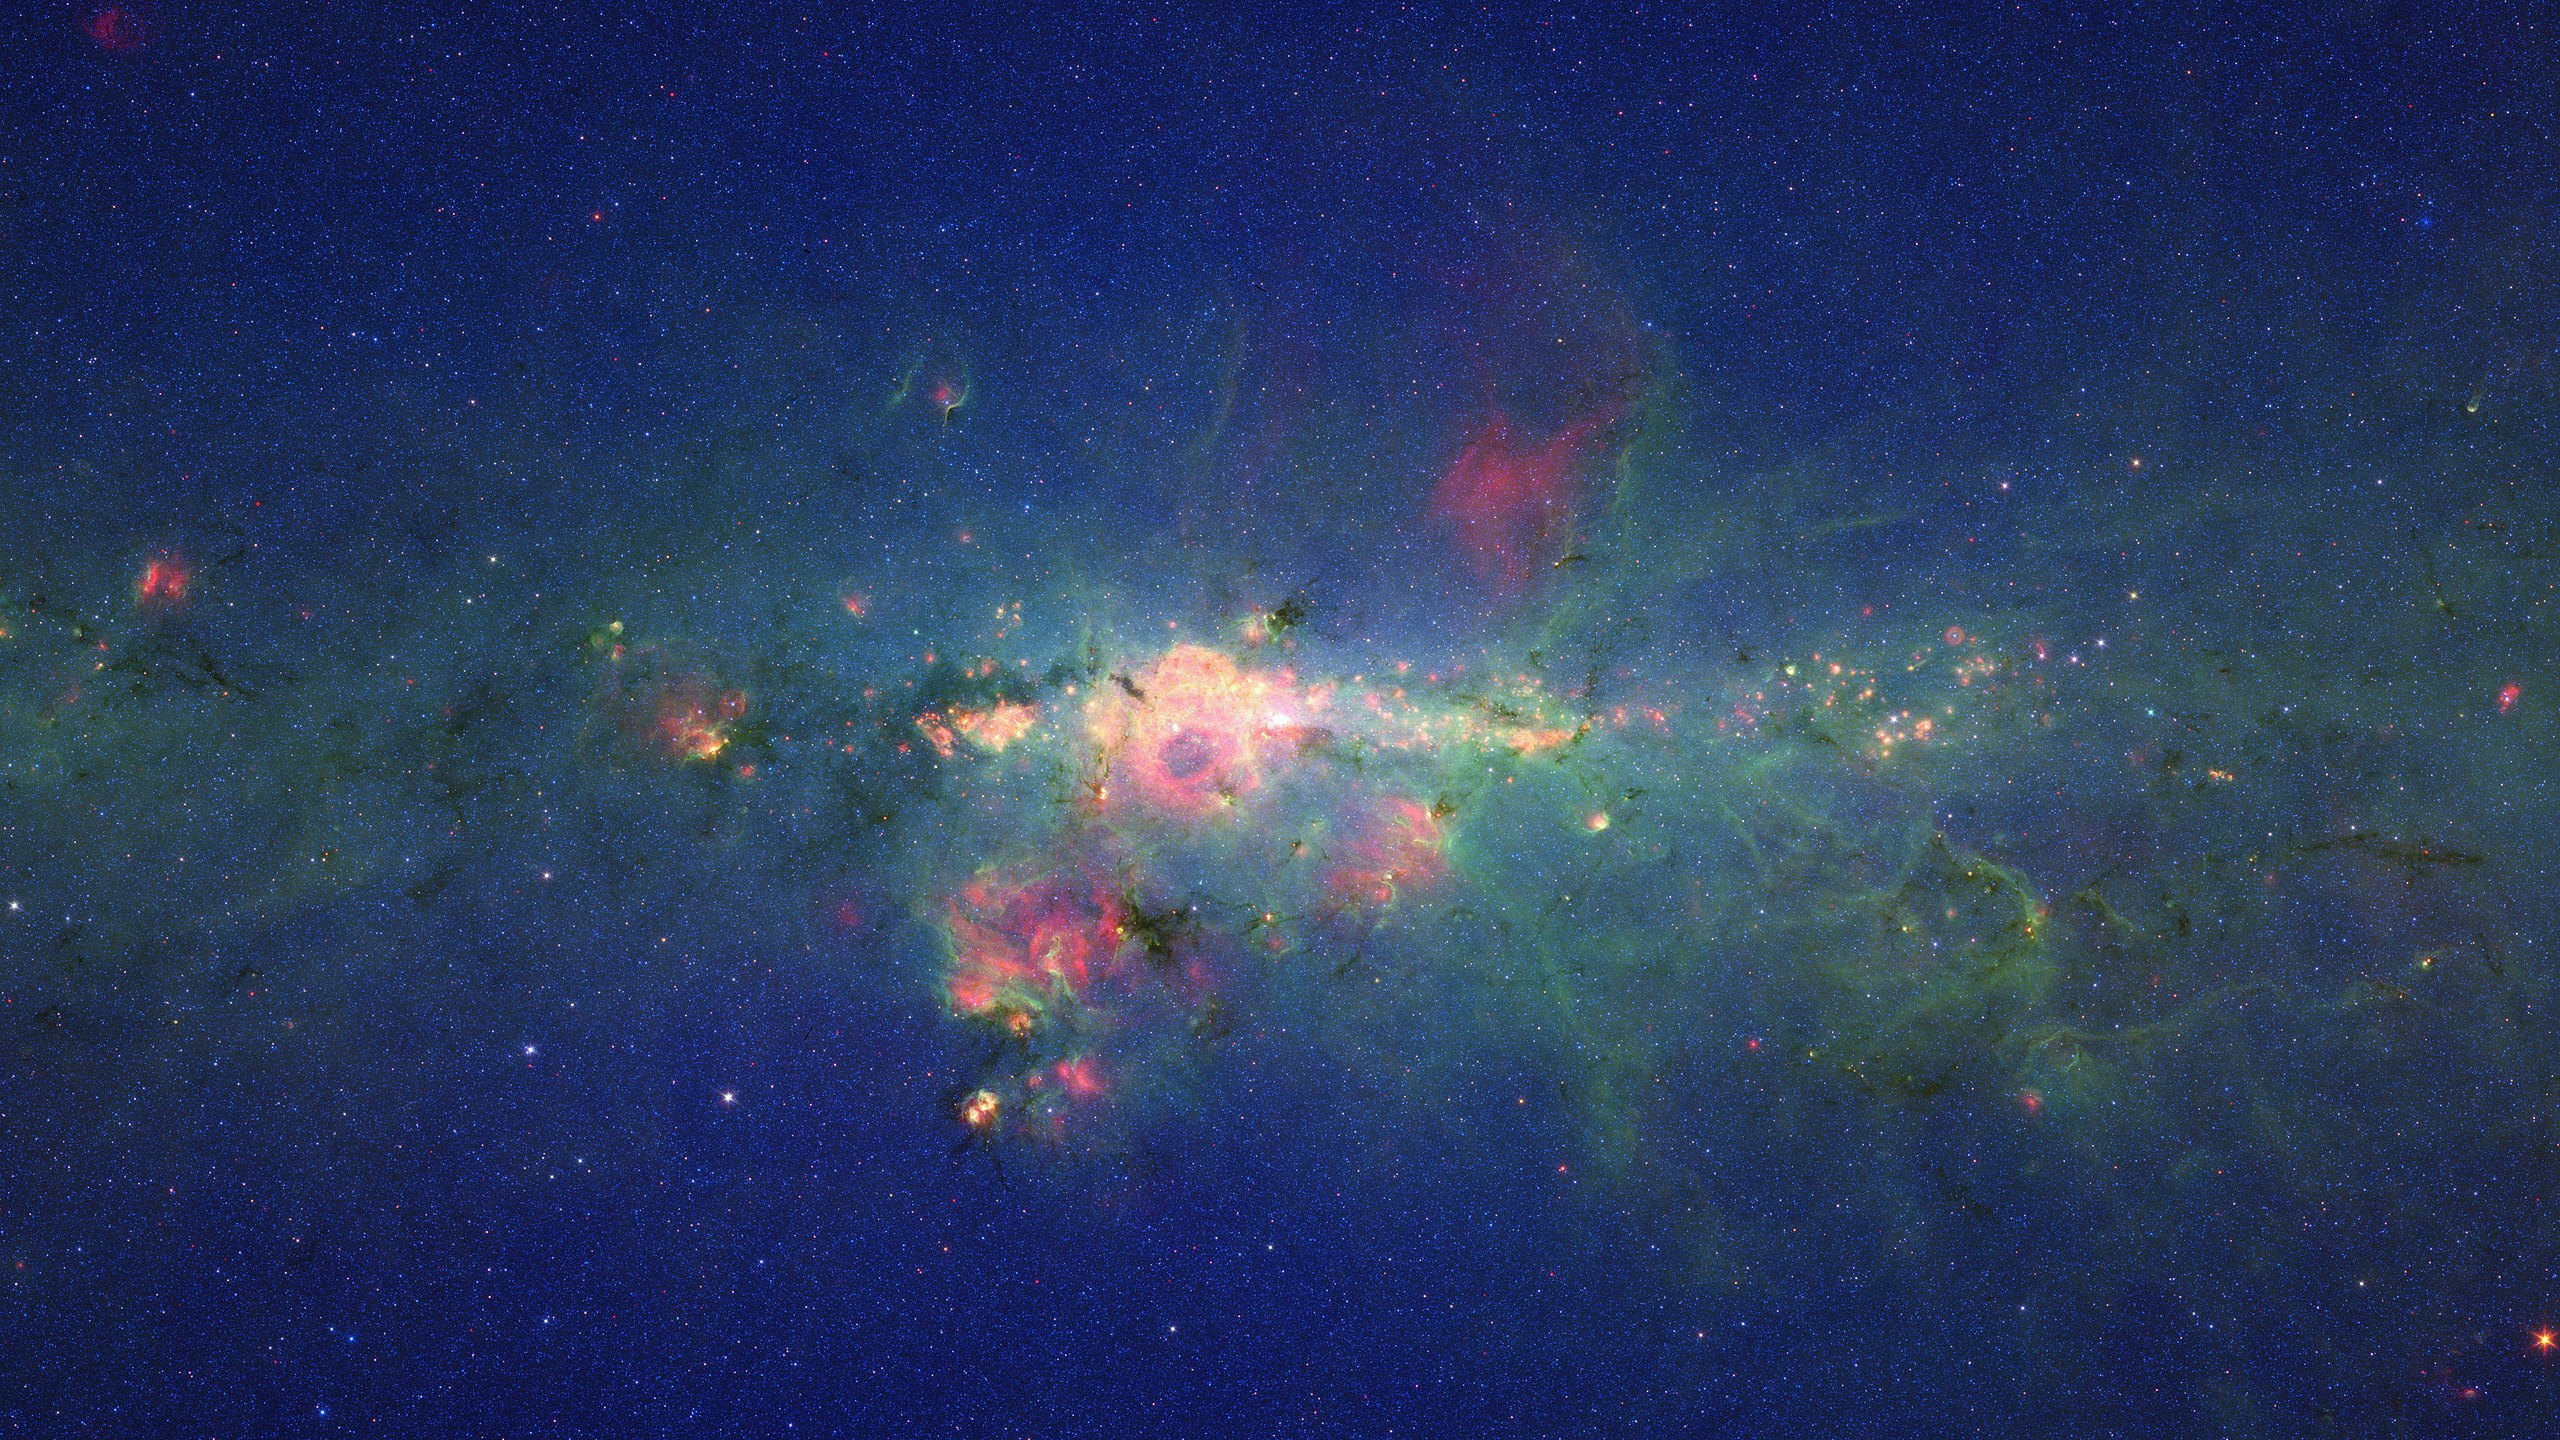 Dải Ngân Hà (Milky Way): Nếu bạn là một người yêu thiên nhiên, không gian sao trời phà phà rực rỡ của Dải Ngân hà sẽ làm cho bạn mãn nhãn. Trải nghiệm và chiêm ngưỡng trên màn hình của bạn những hình ảnh tuyệt vời về Dải Ngân hà hoàn toàn miễn phí!